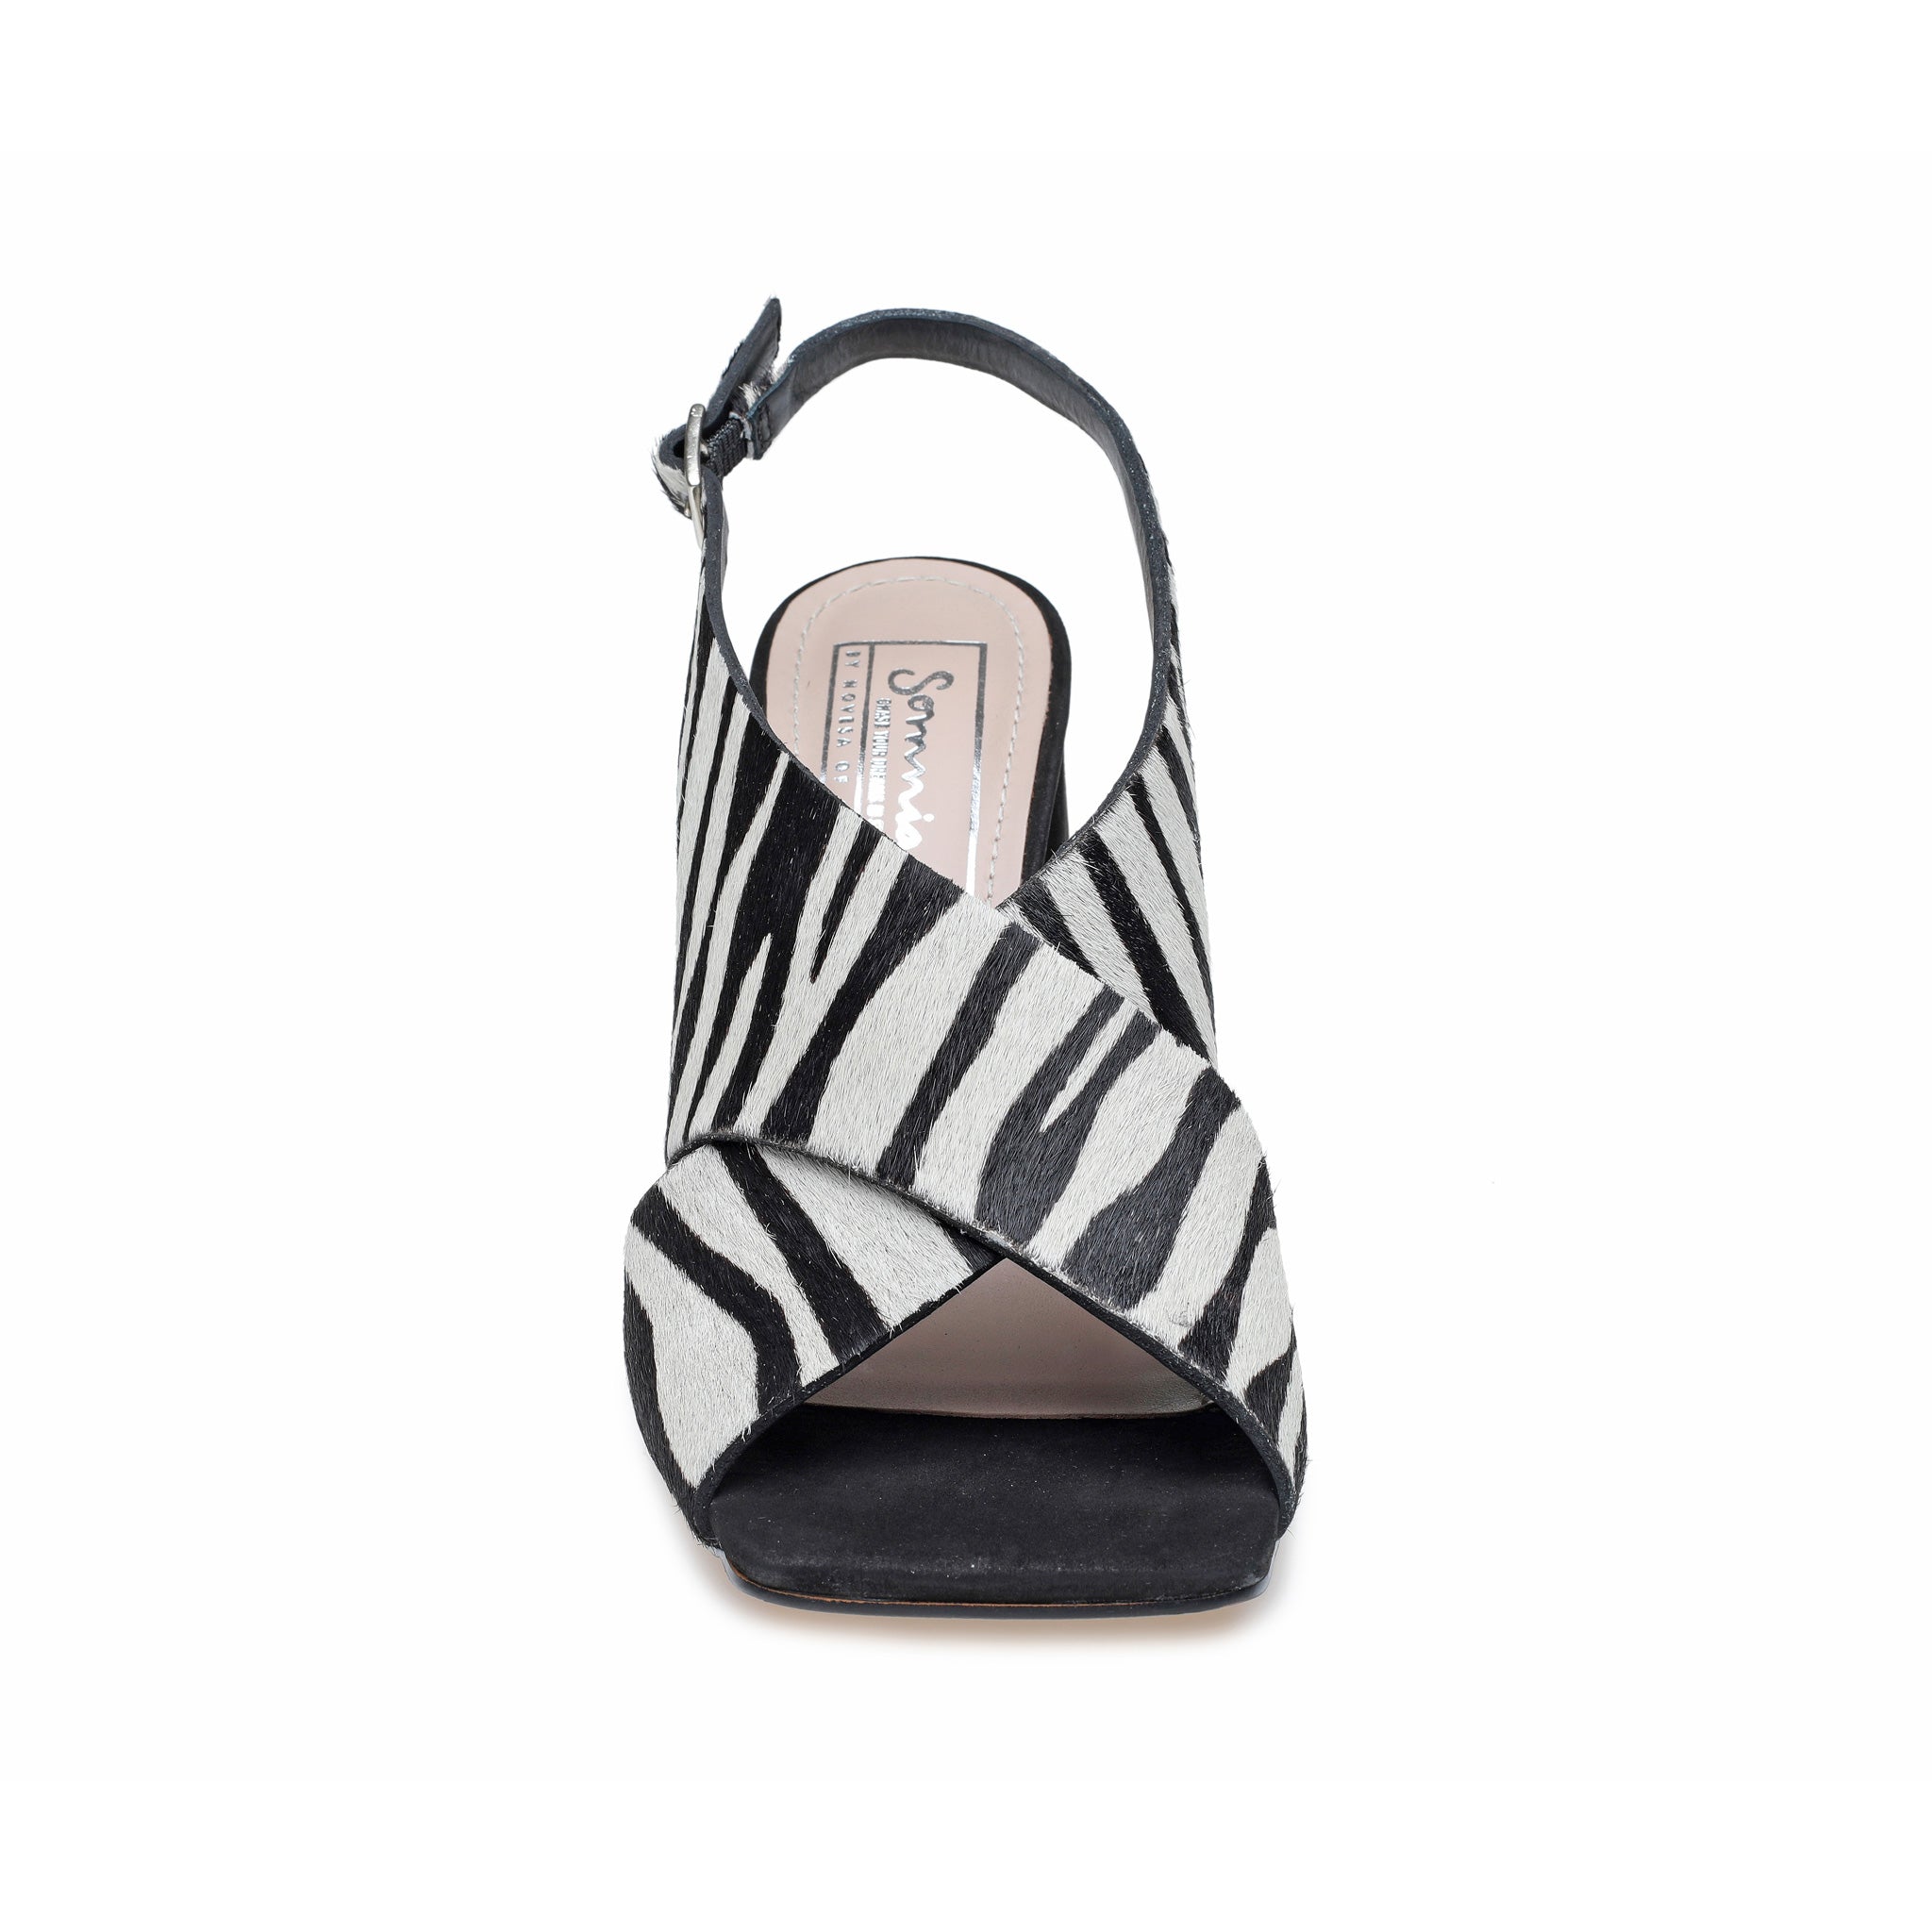 Zebra Print Cross Over Sandals